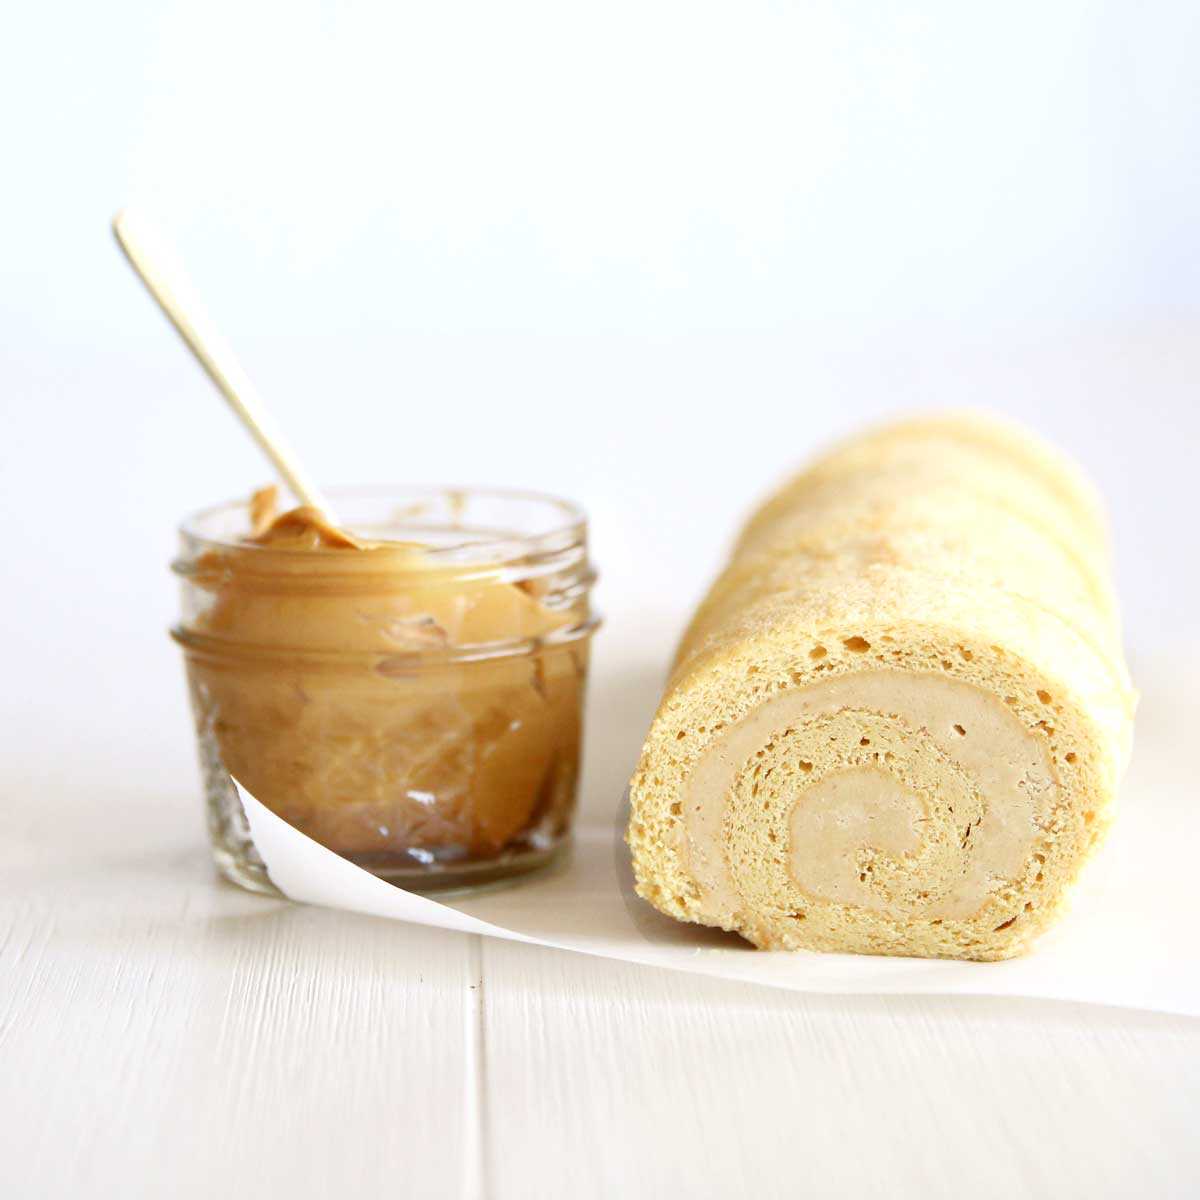 Flourless Peanut Butter Swiss Roll Cake with a Sweet Peanut Cream Filling - Peanut Butter Glaze